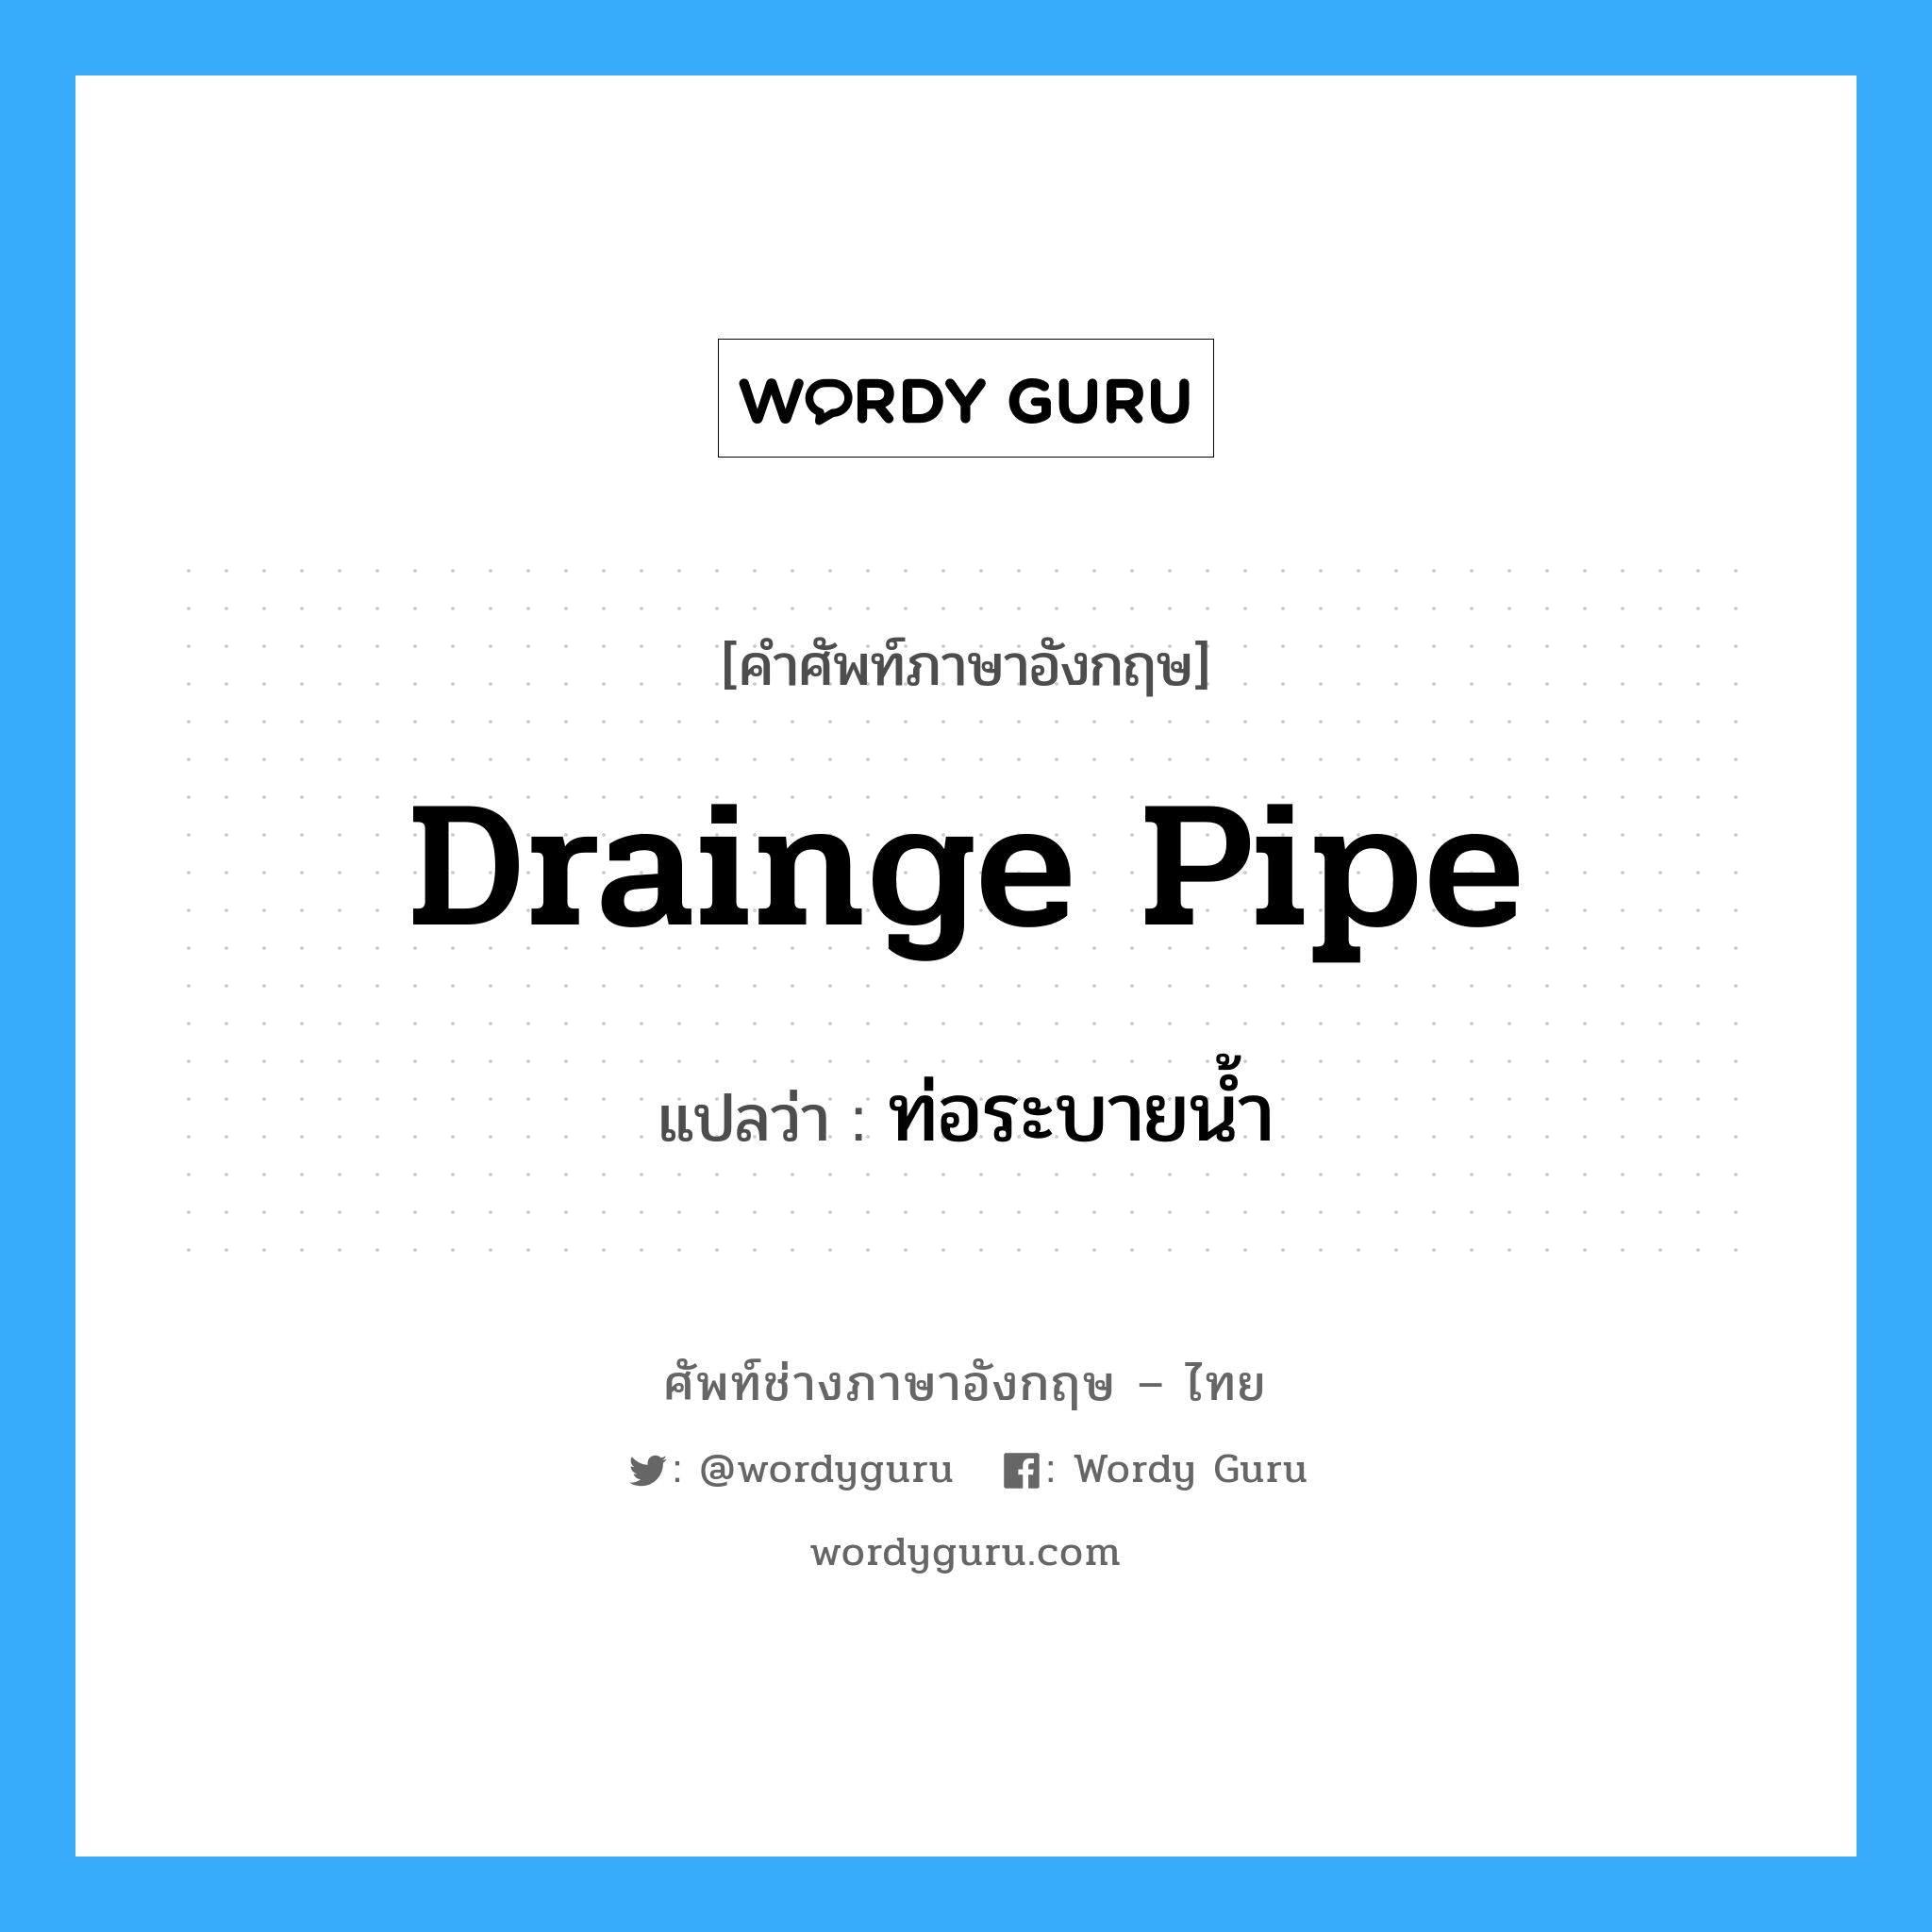 drainge pipe แปลว่า?, คำศัพท์ช่างภาษาอังกฤษ - ไทย drainge pipe คำศัพท์ภาษาอังกฤษ drainge pipe แปลว่า ท่อระบายน้ำ